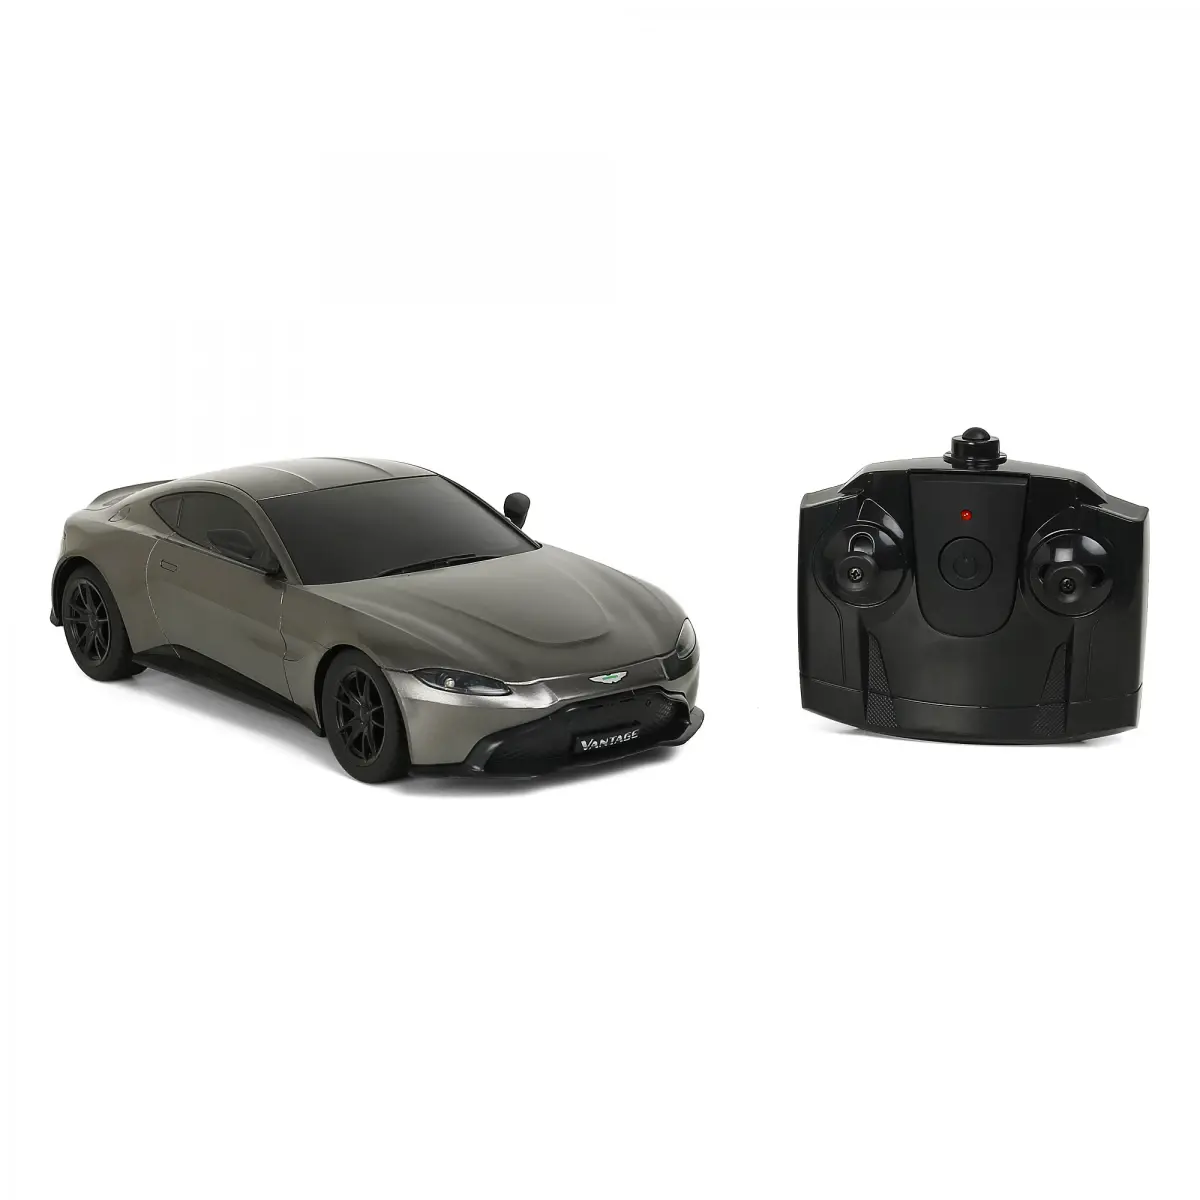 Rallyez Aston Martin Vantage Remote Control Car, 6Y+, Black